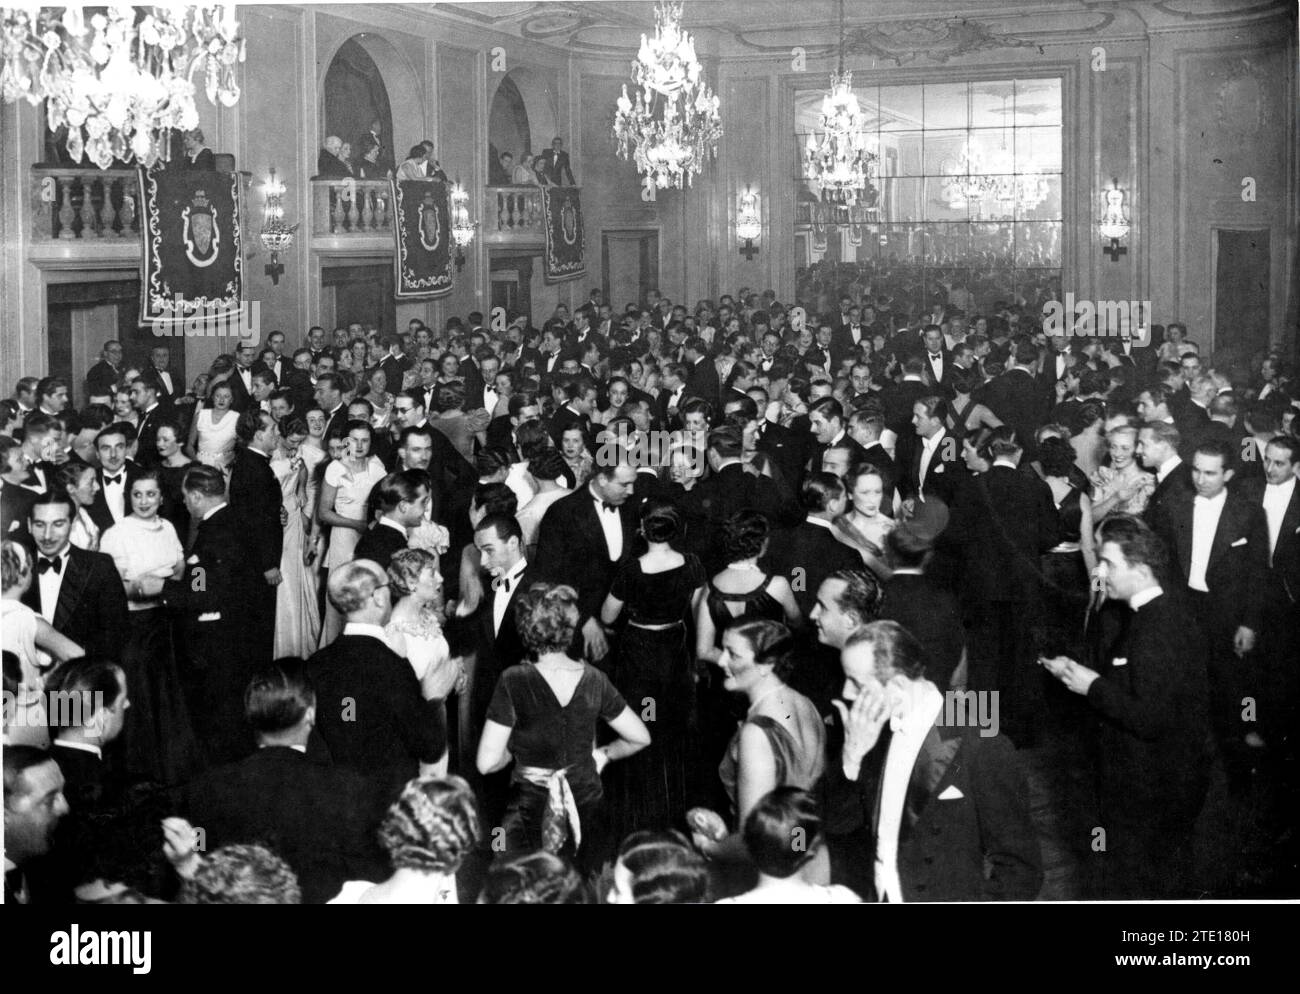 Barcellona, 01/07/1936. Apparizione della sala del Ritz Hotel di Barcellona durante il ballo di beneficenza per sostenere l'ospedale della Croce Rossa. Crediti: Album / Archivo ABC / Josep Brangulí Foto Stock